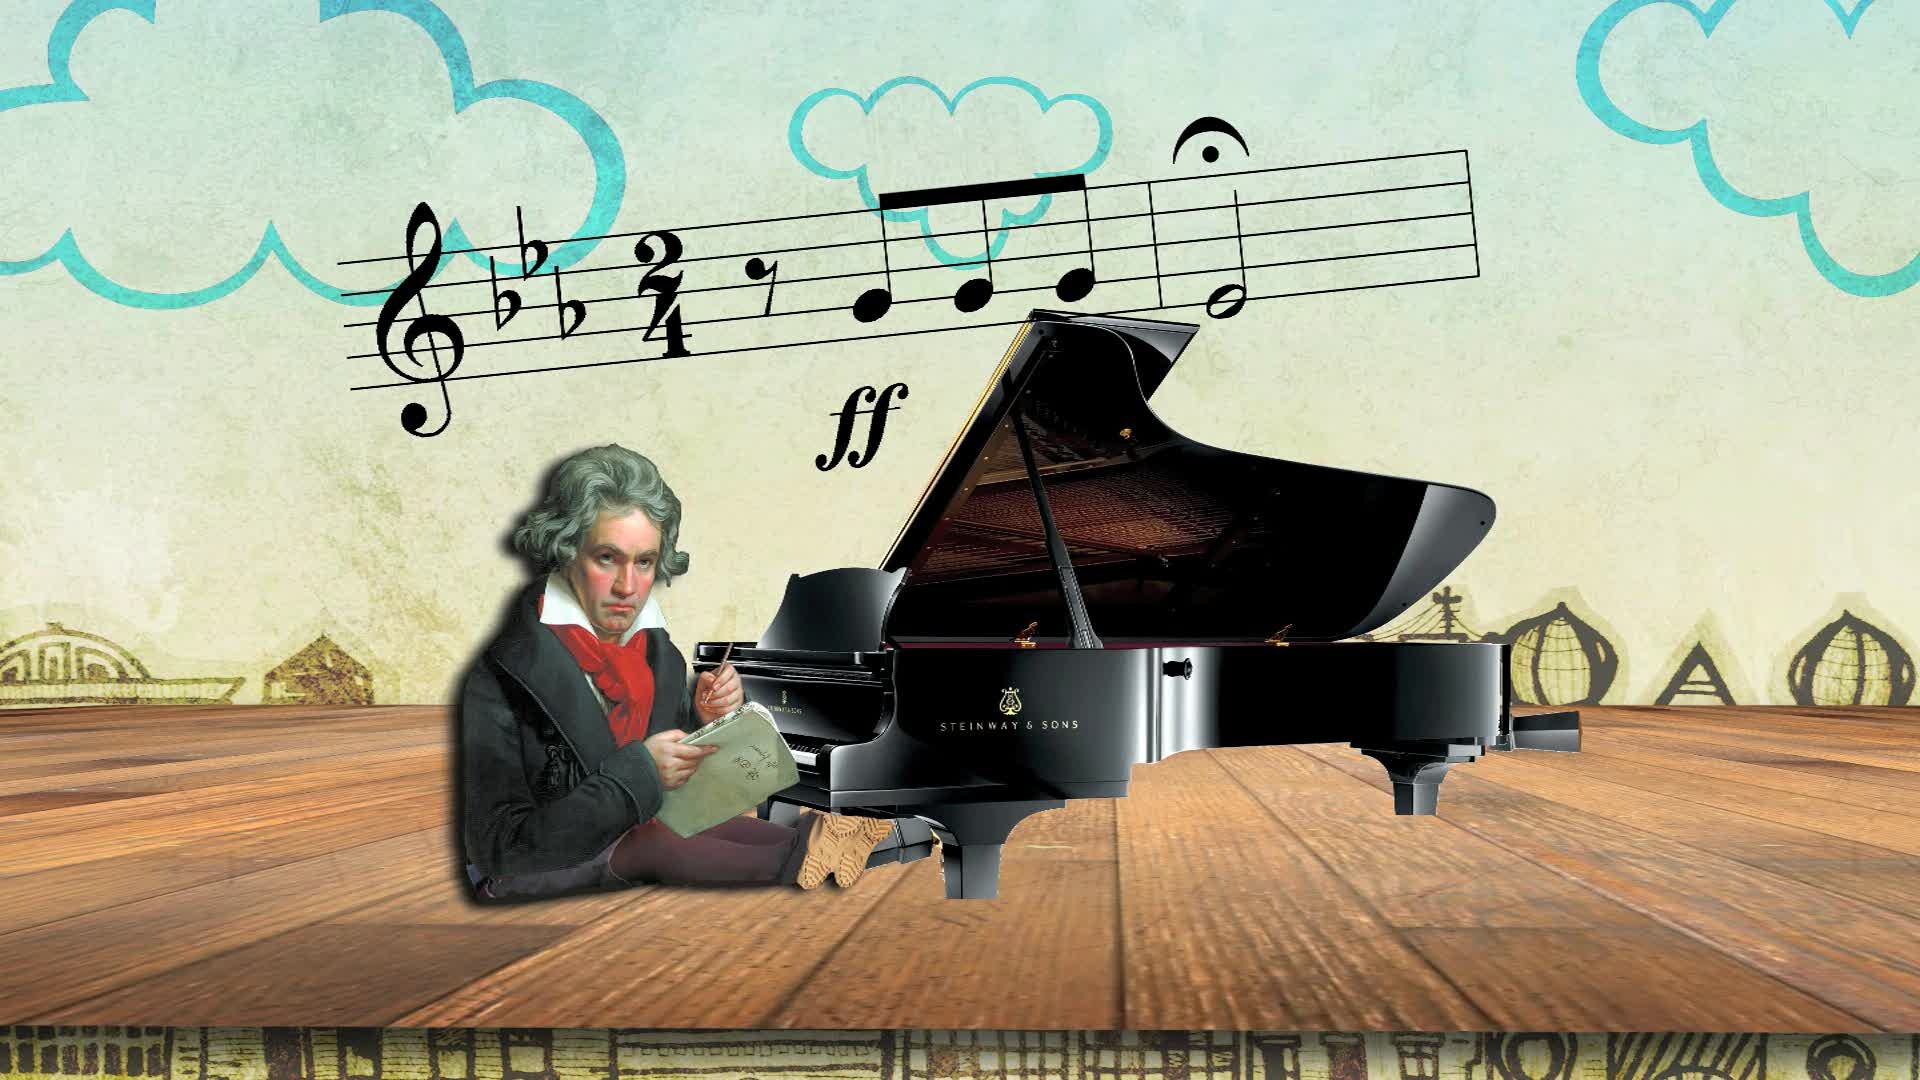 Vechter nevel vrede Schooltv: De vijfde symfonie van Beethoven - Klassieke muziek die de  muziekgeschiedenis zou veranderen